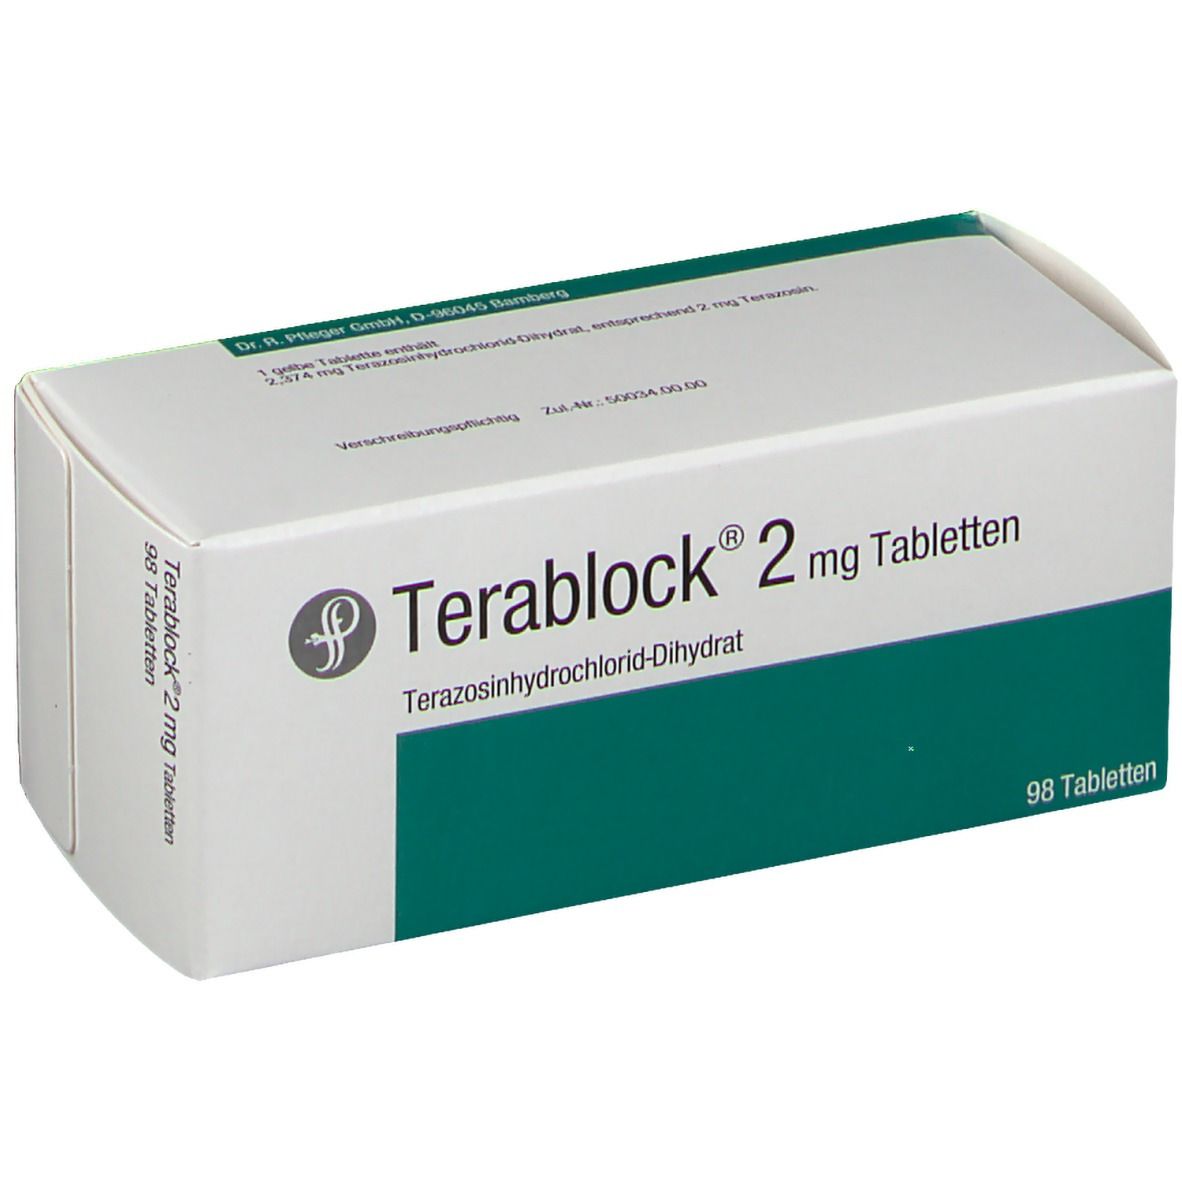 Terablock® 2 mg